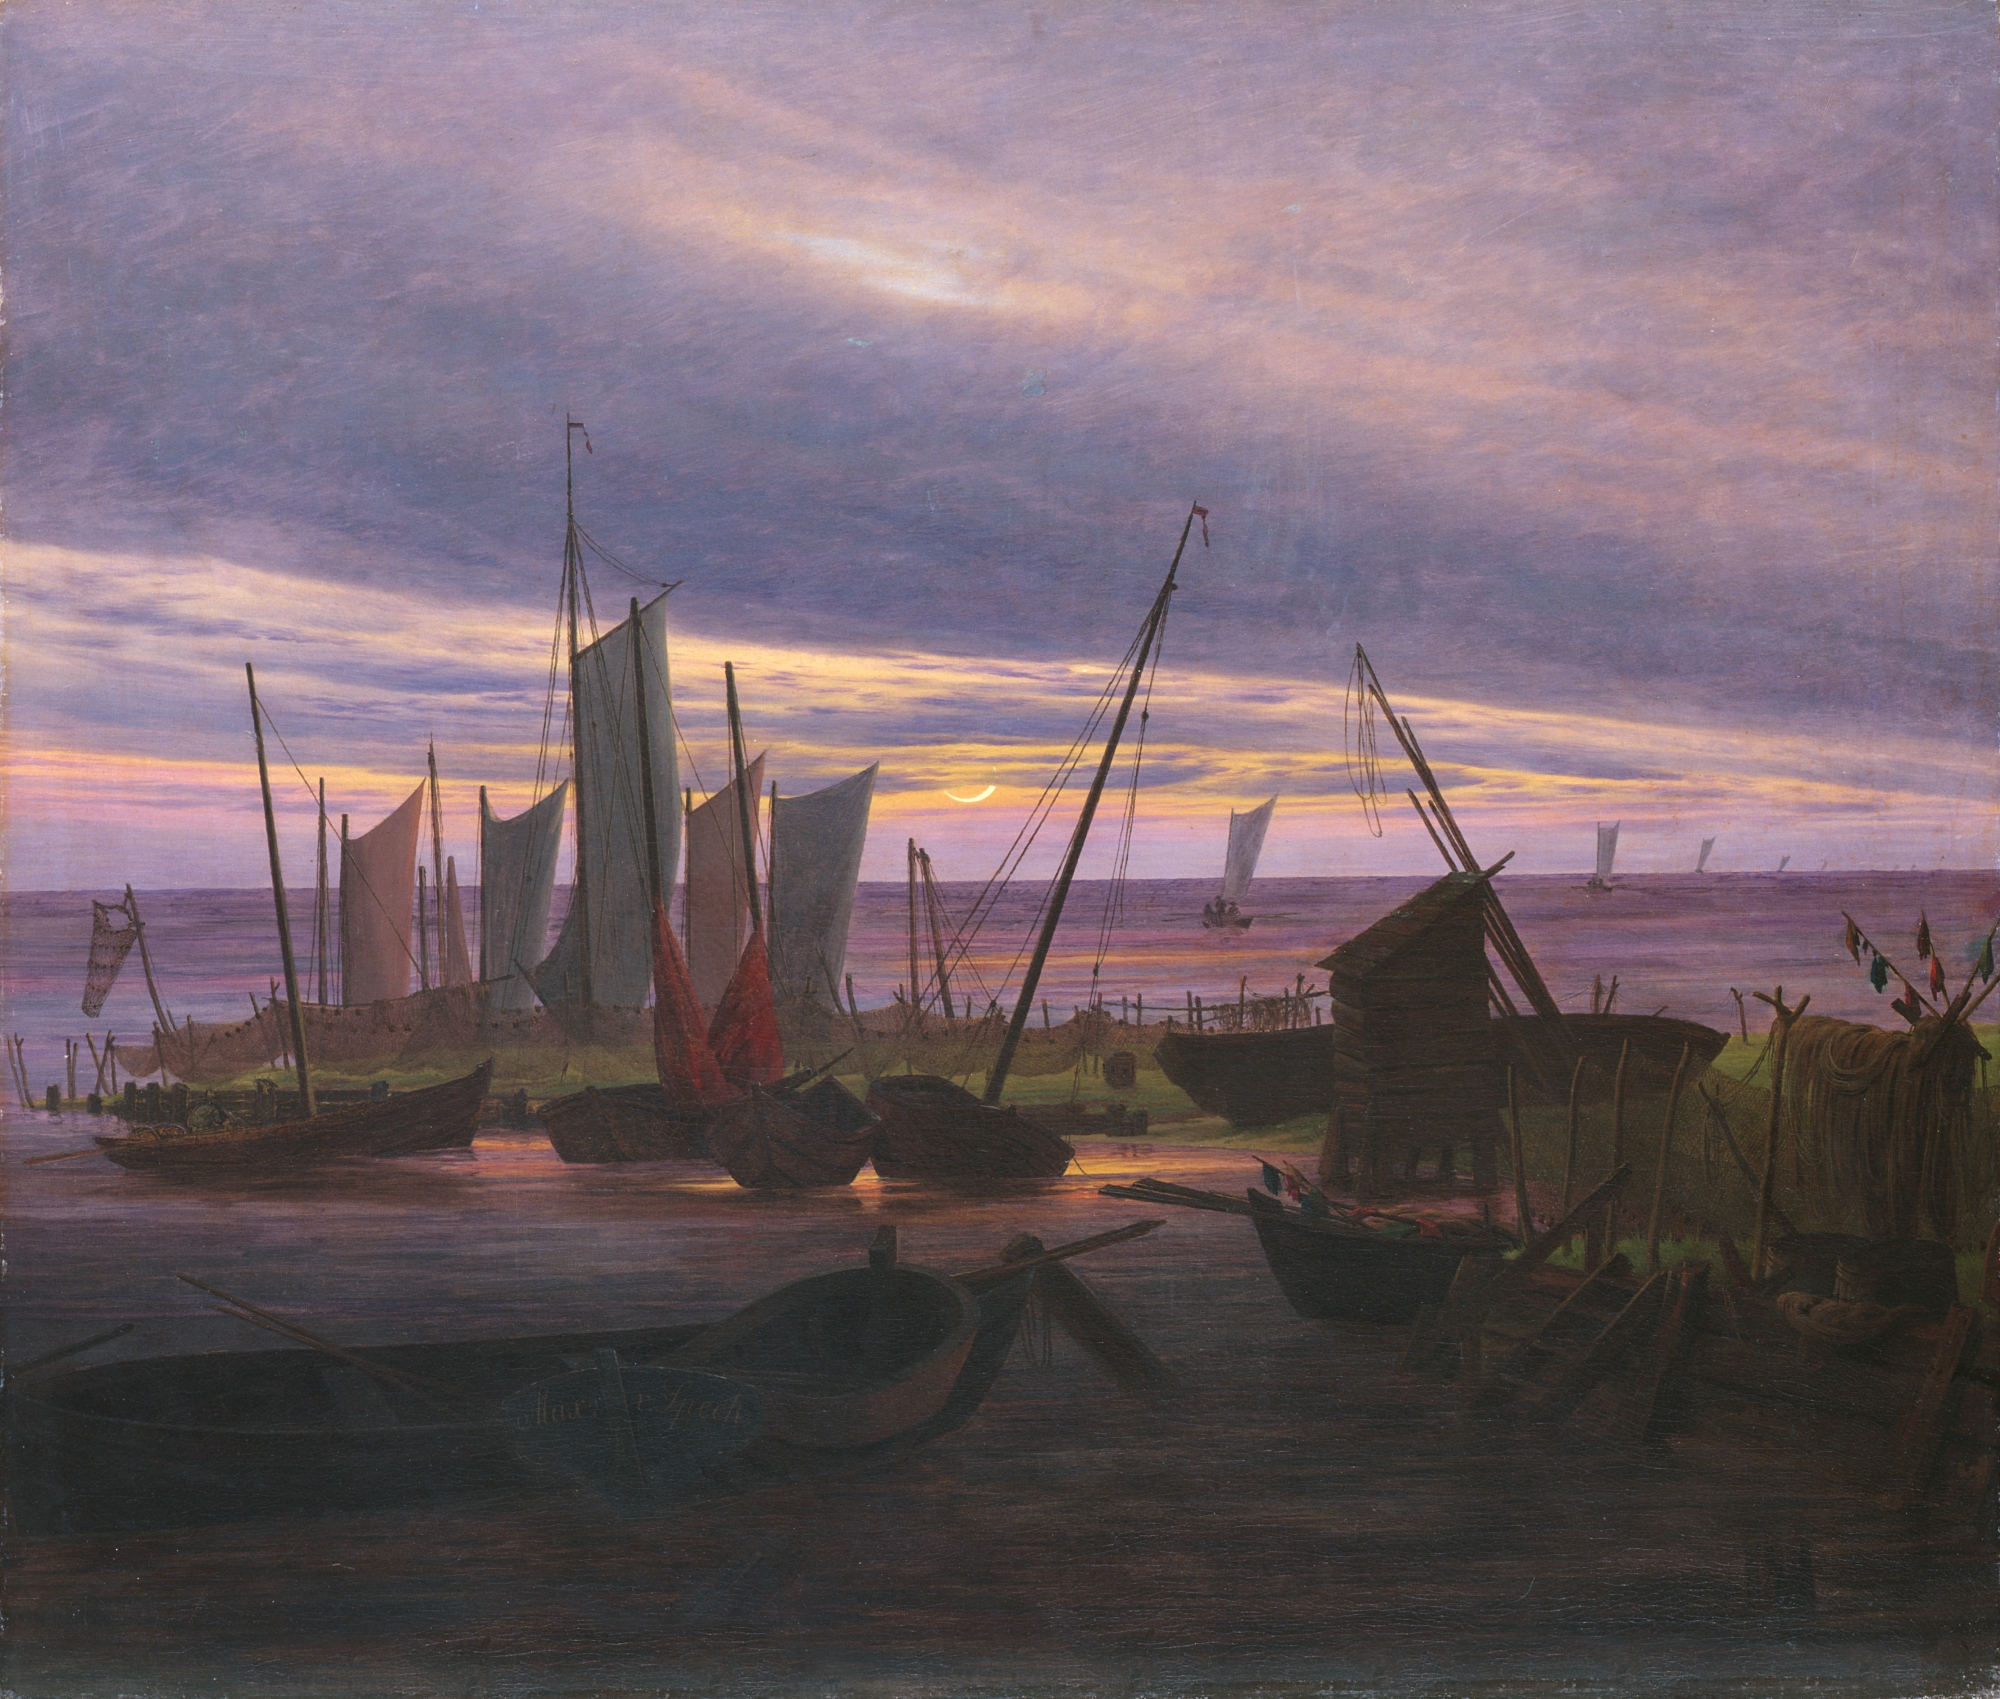 저녁 항구의 배(Boats in the Harbour at Evening) by Caspar David Friedrich - 1828 - 76.5 cm x 88.2 cm 